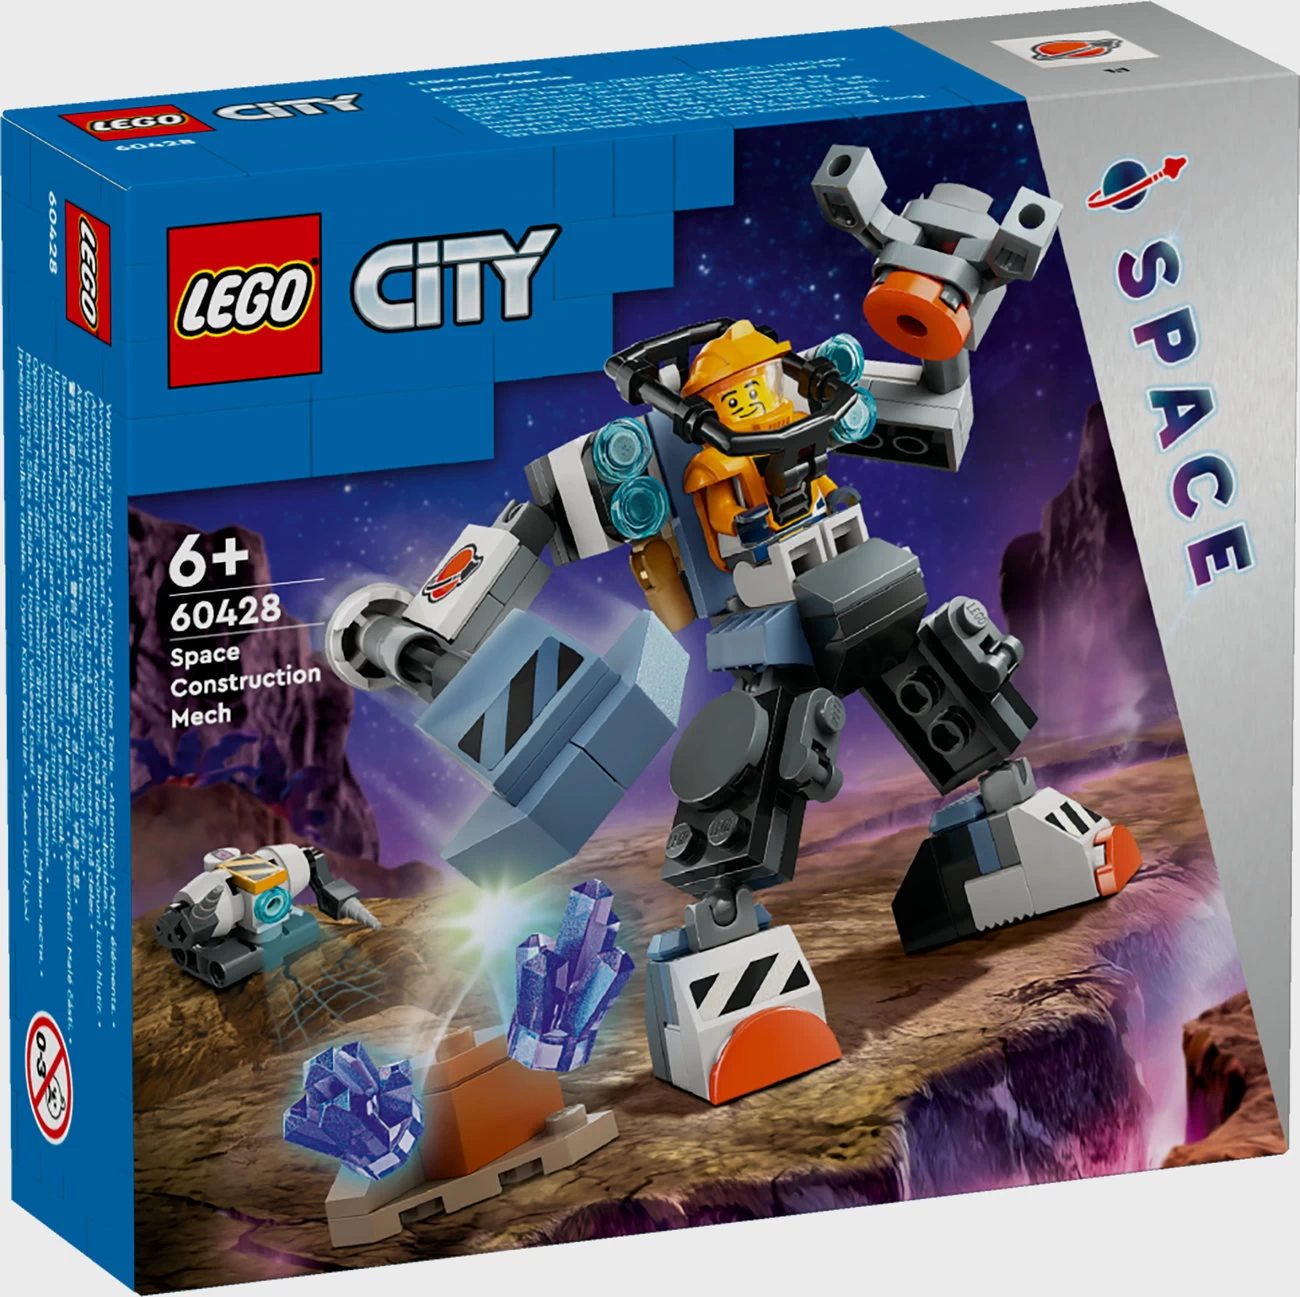 LEGO City 60428 - Weltraum Mech